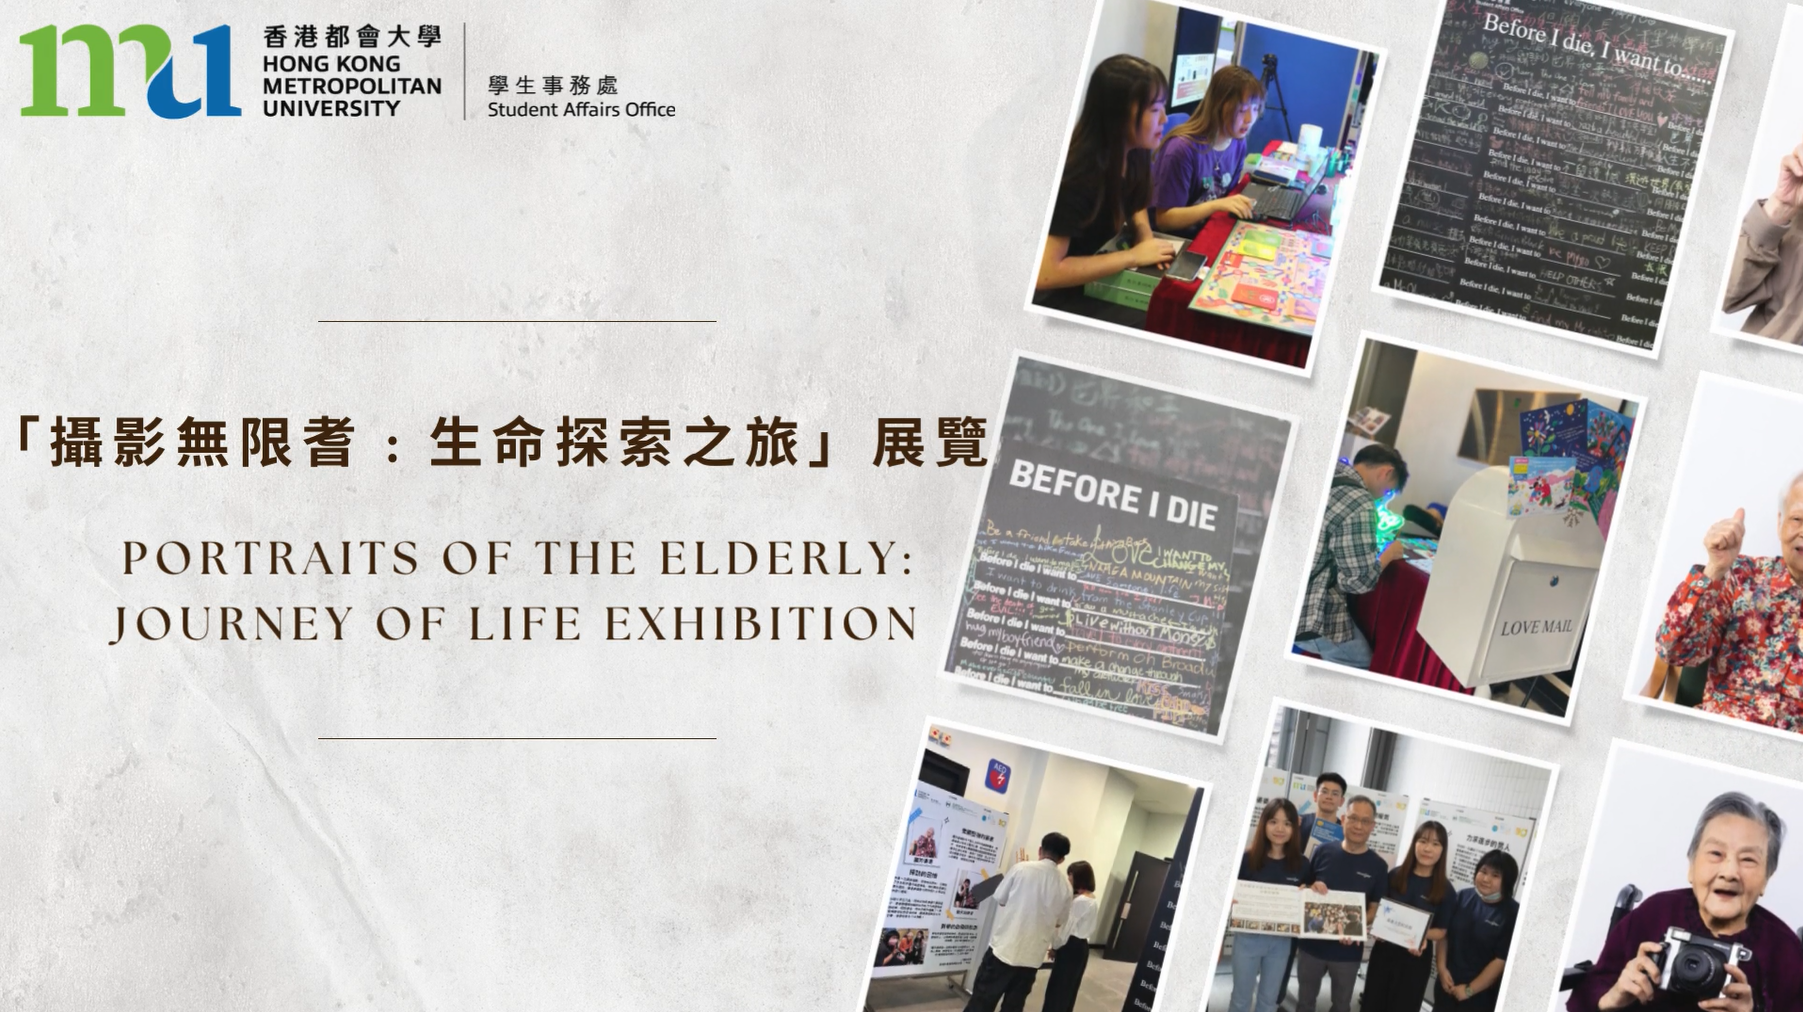 「攝影無限耆﹕生命探索之旅」展覽 = “Portraits of the Elderly: Journey of Life” exhibition